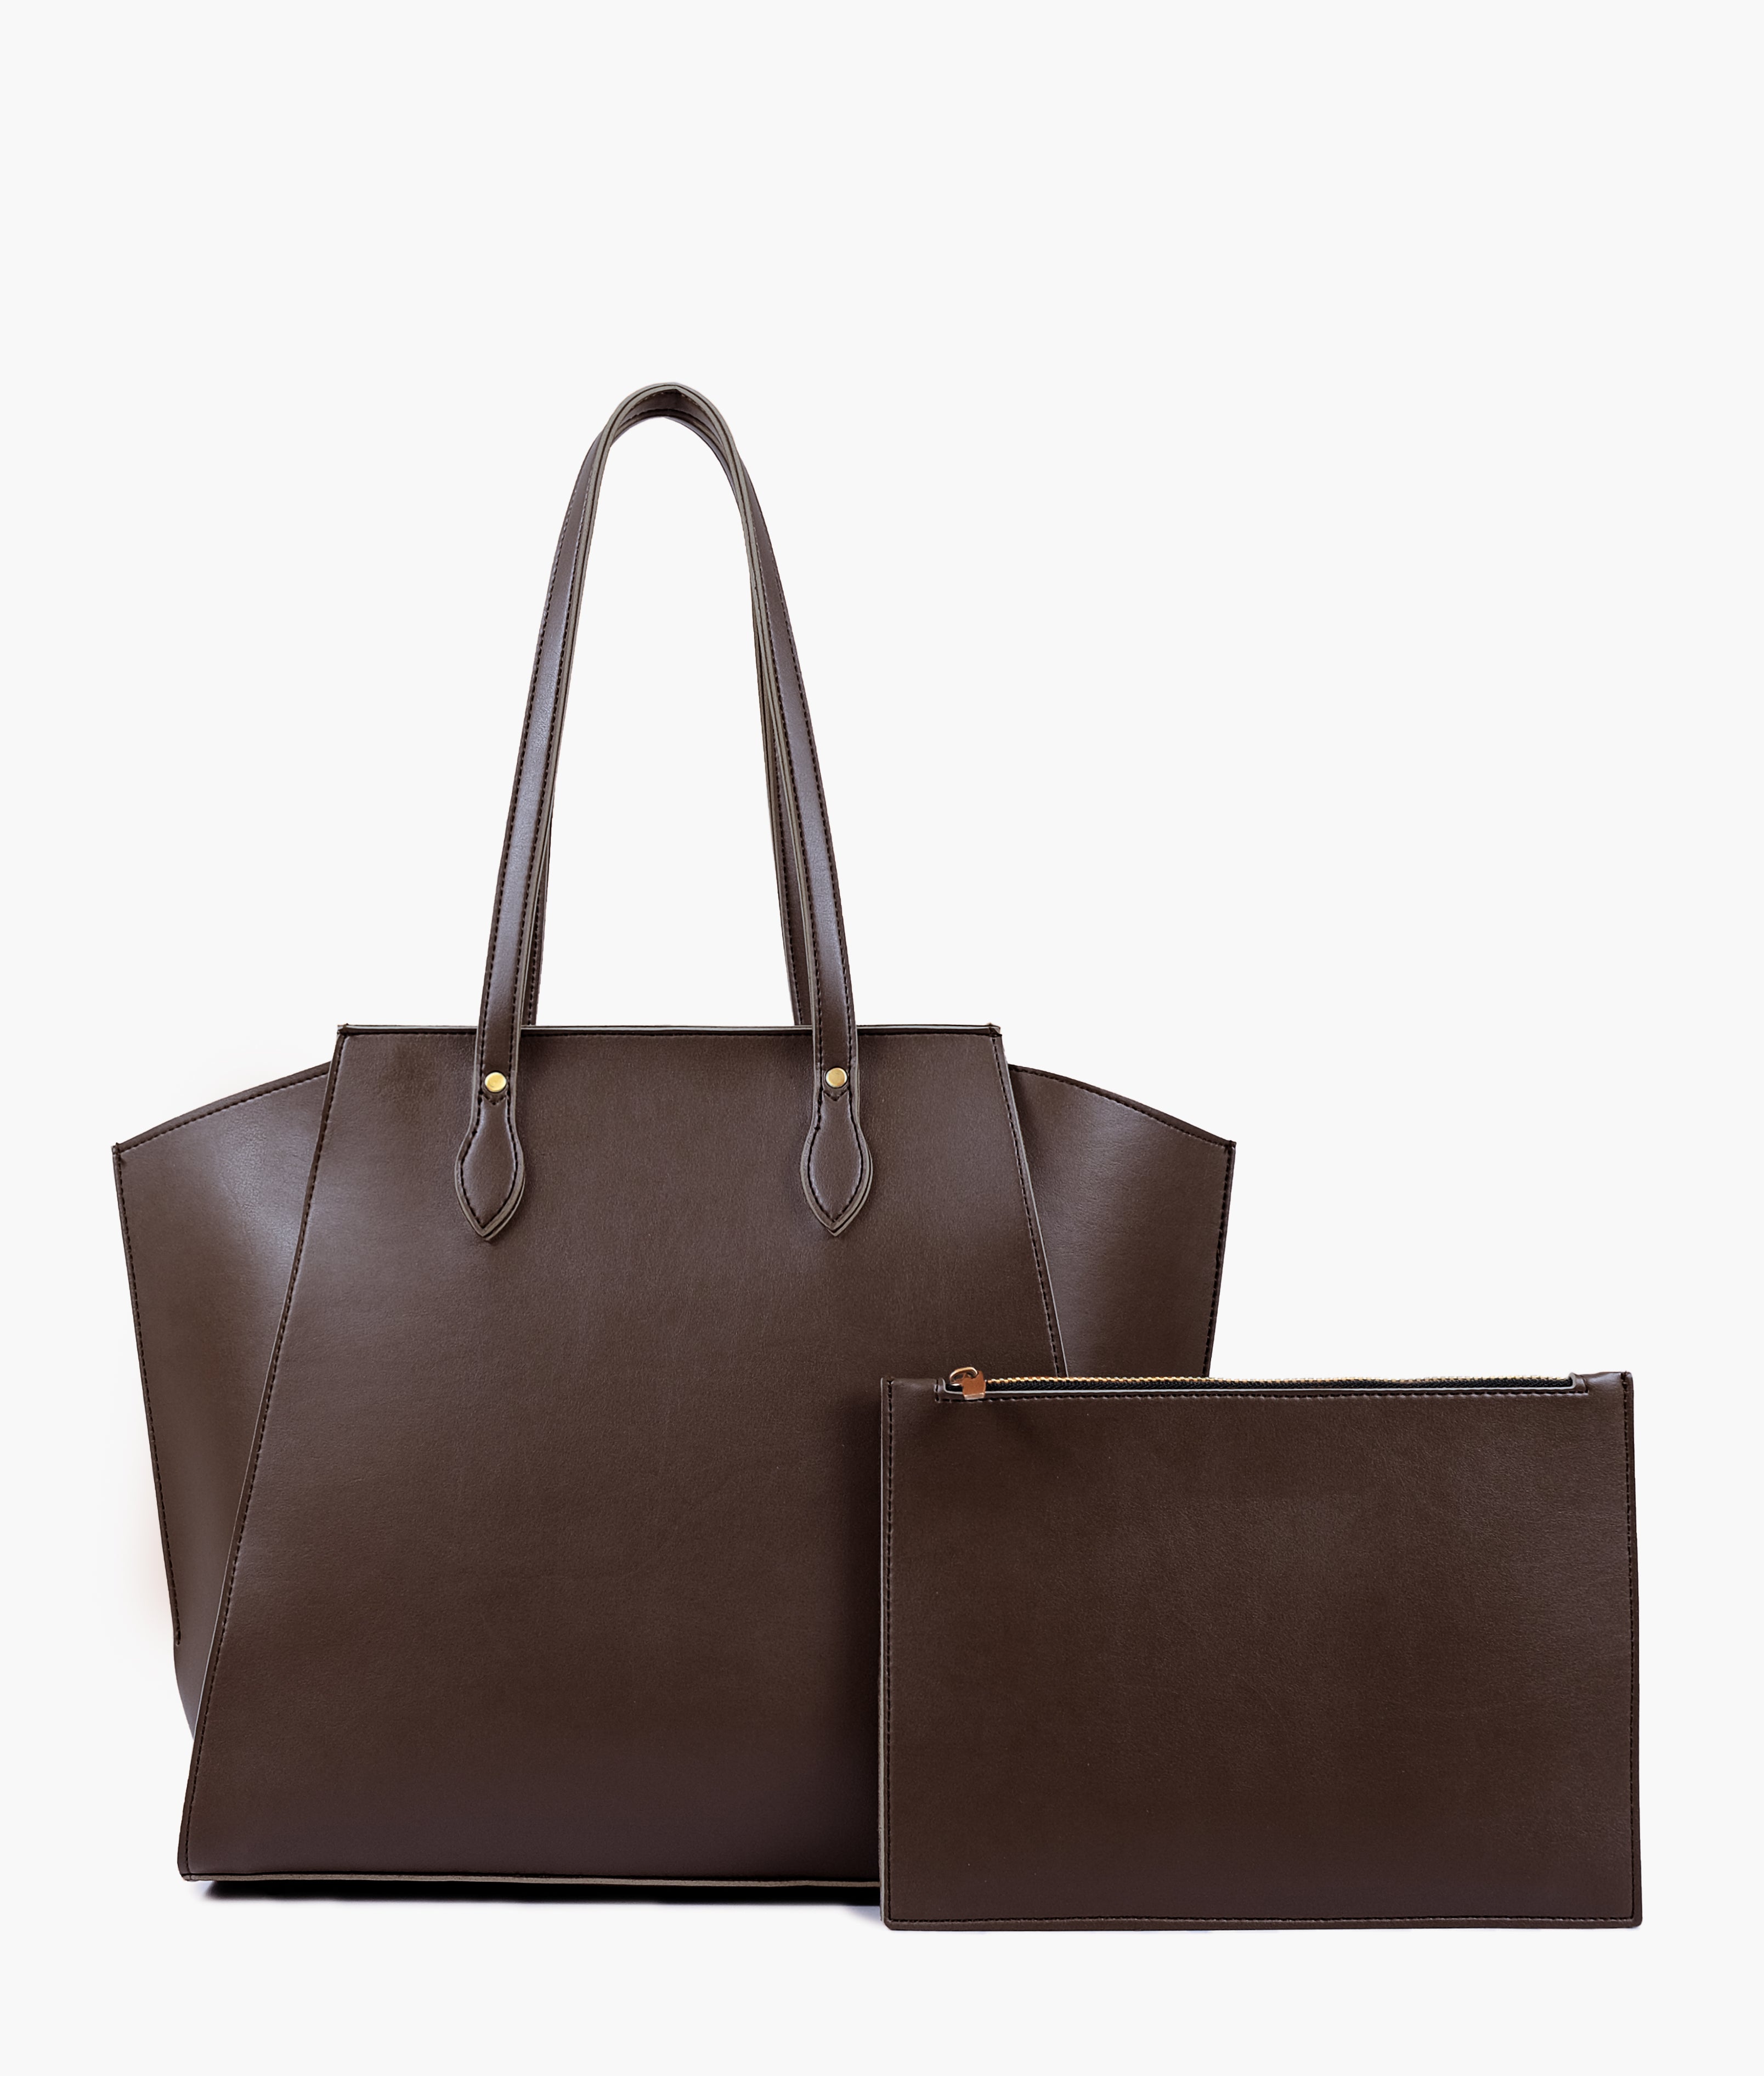 Dark brown classic tote bag